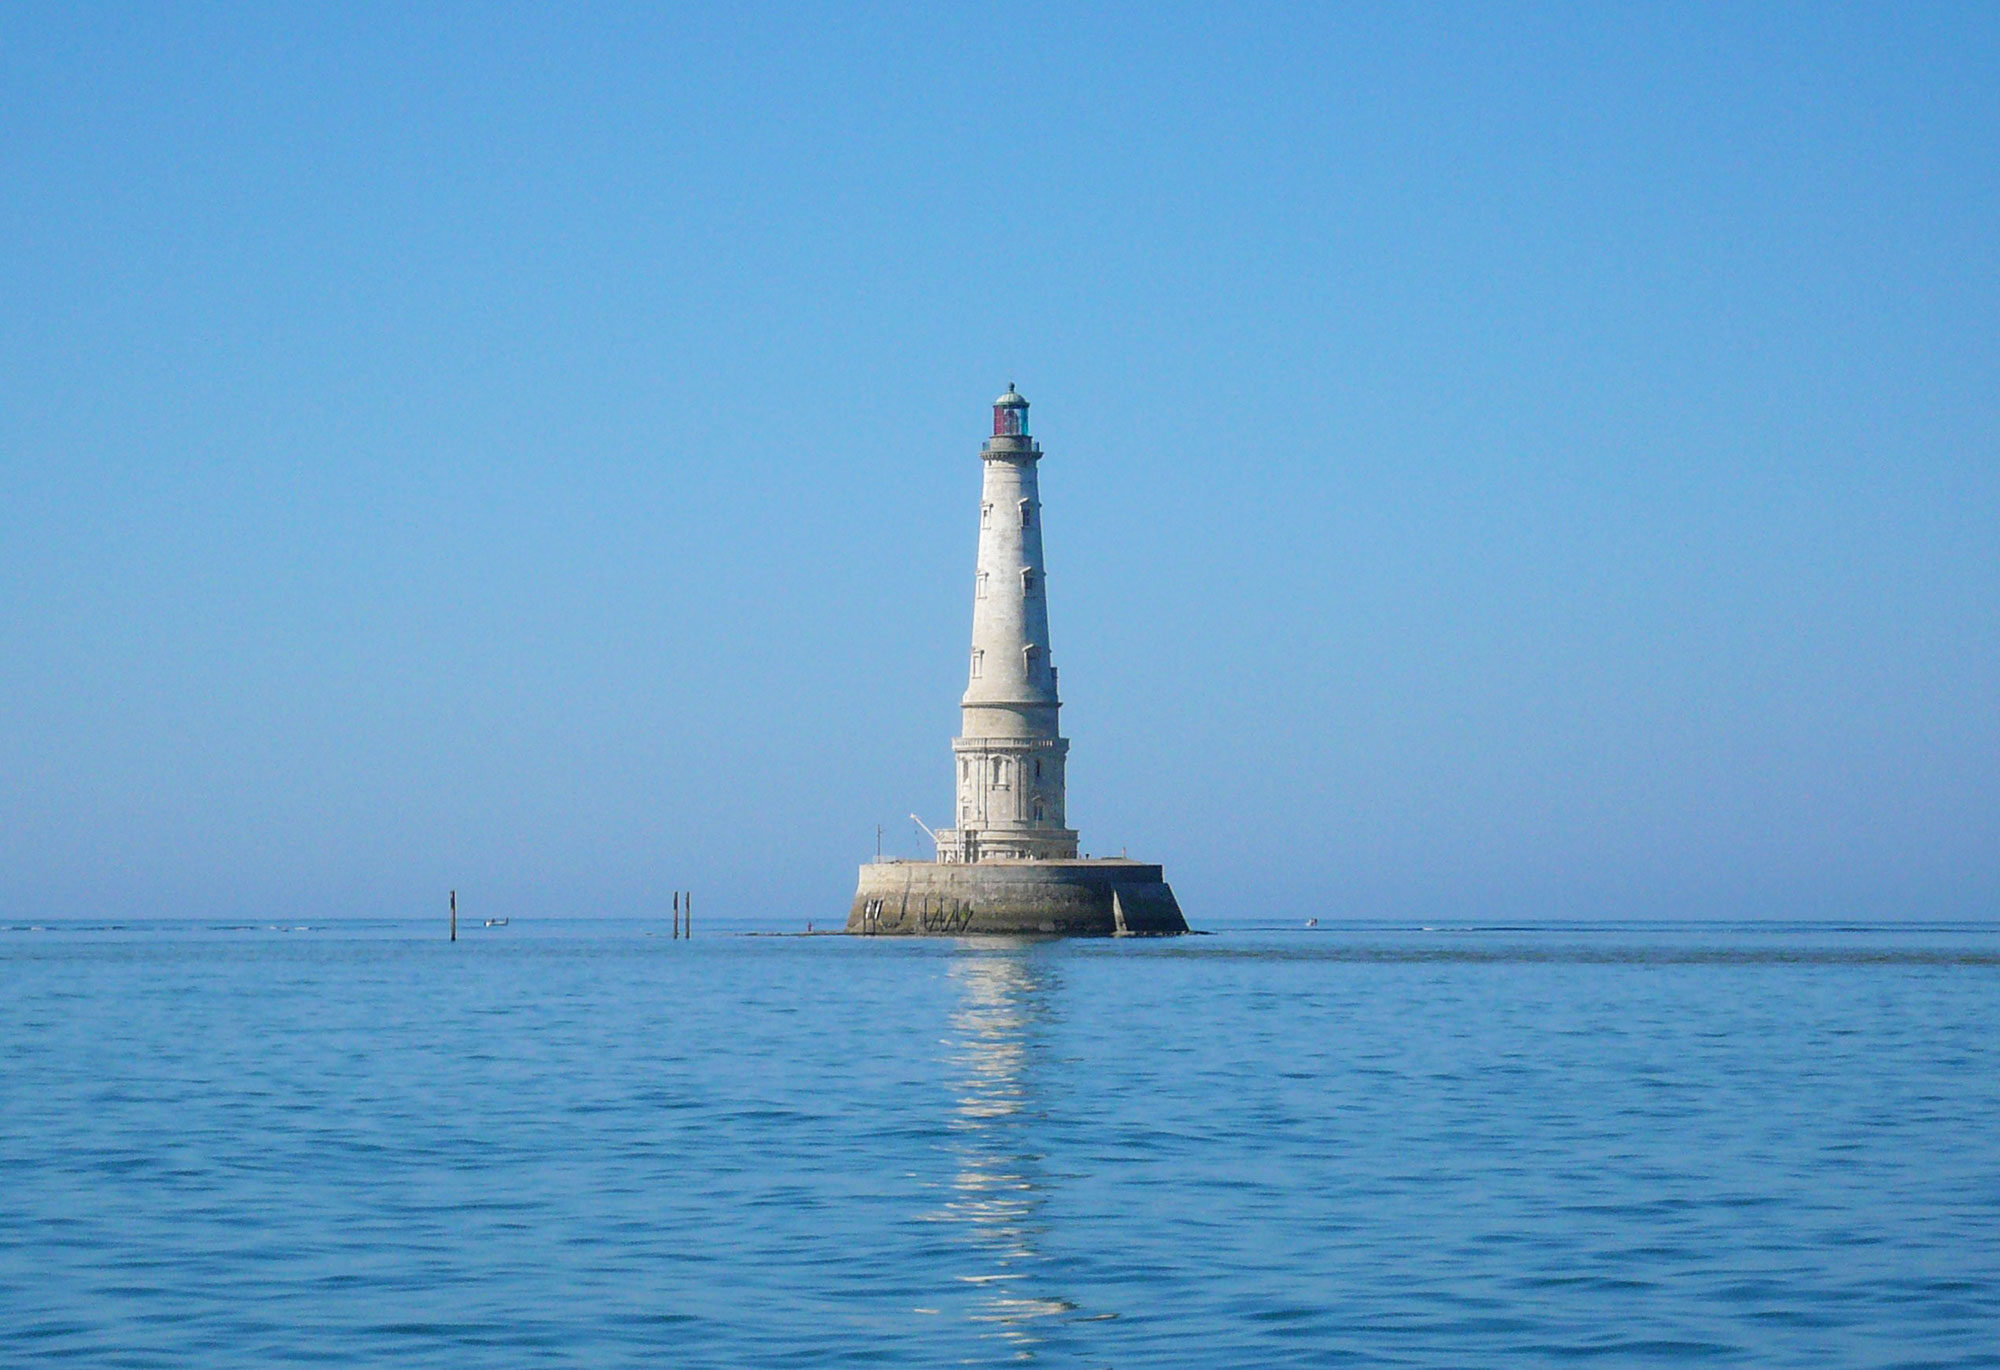 Le phare de Cordouan inscrit au Patrimoine mondial de l’humanité par l’Unesco